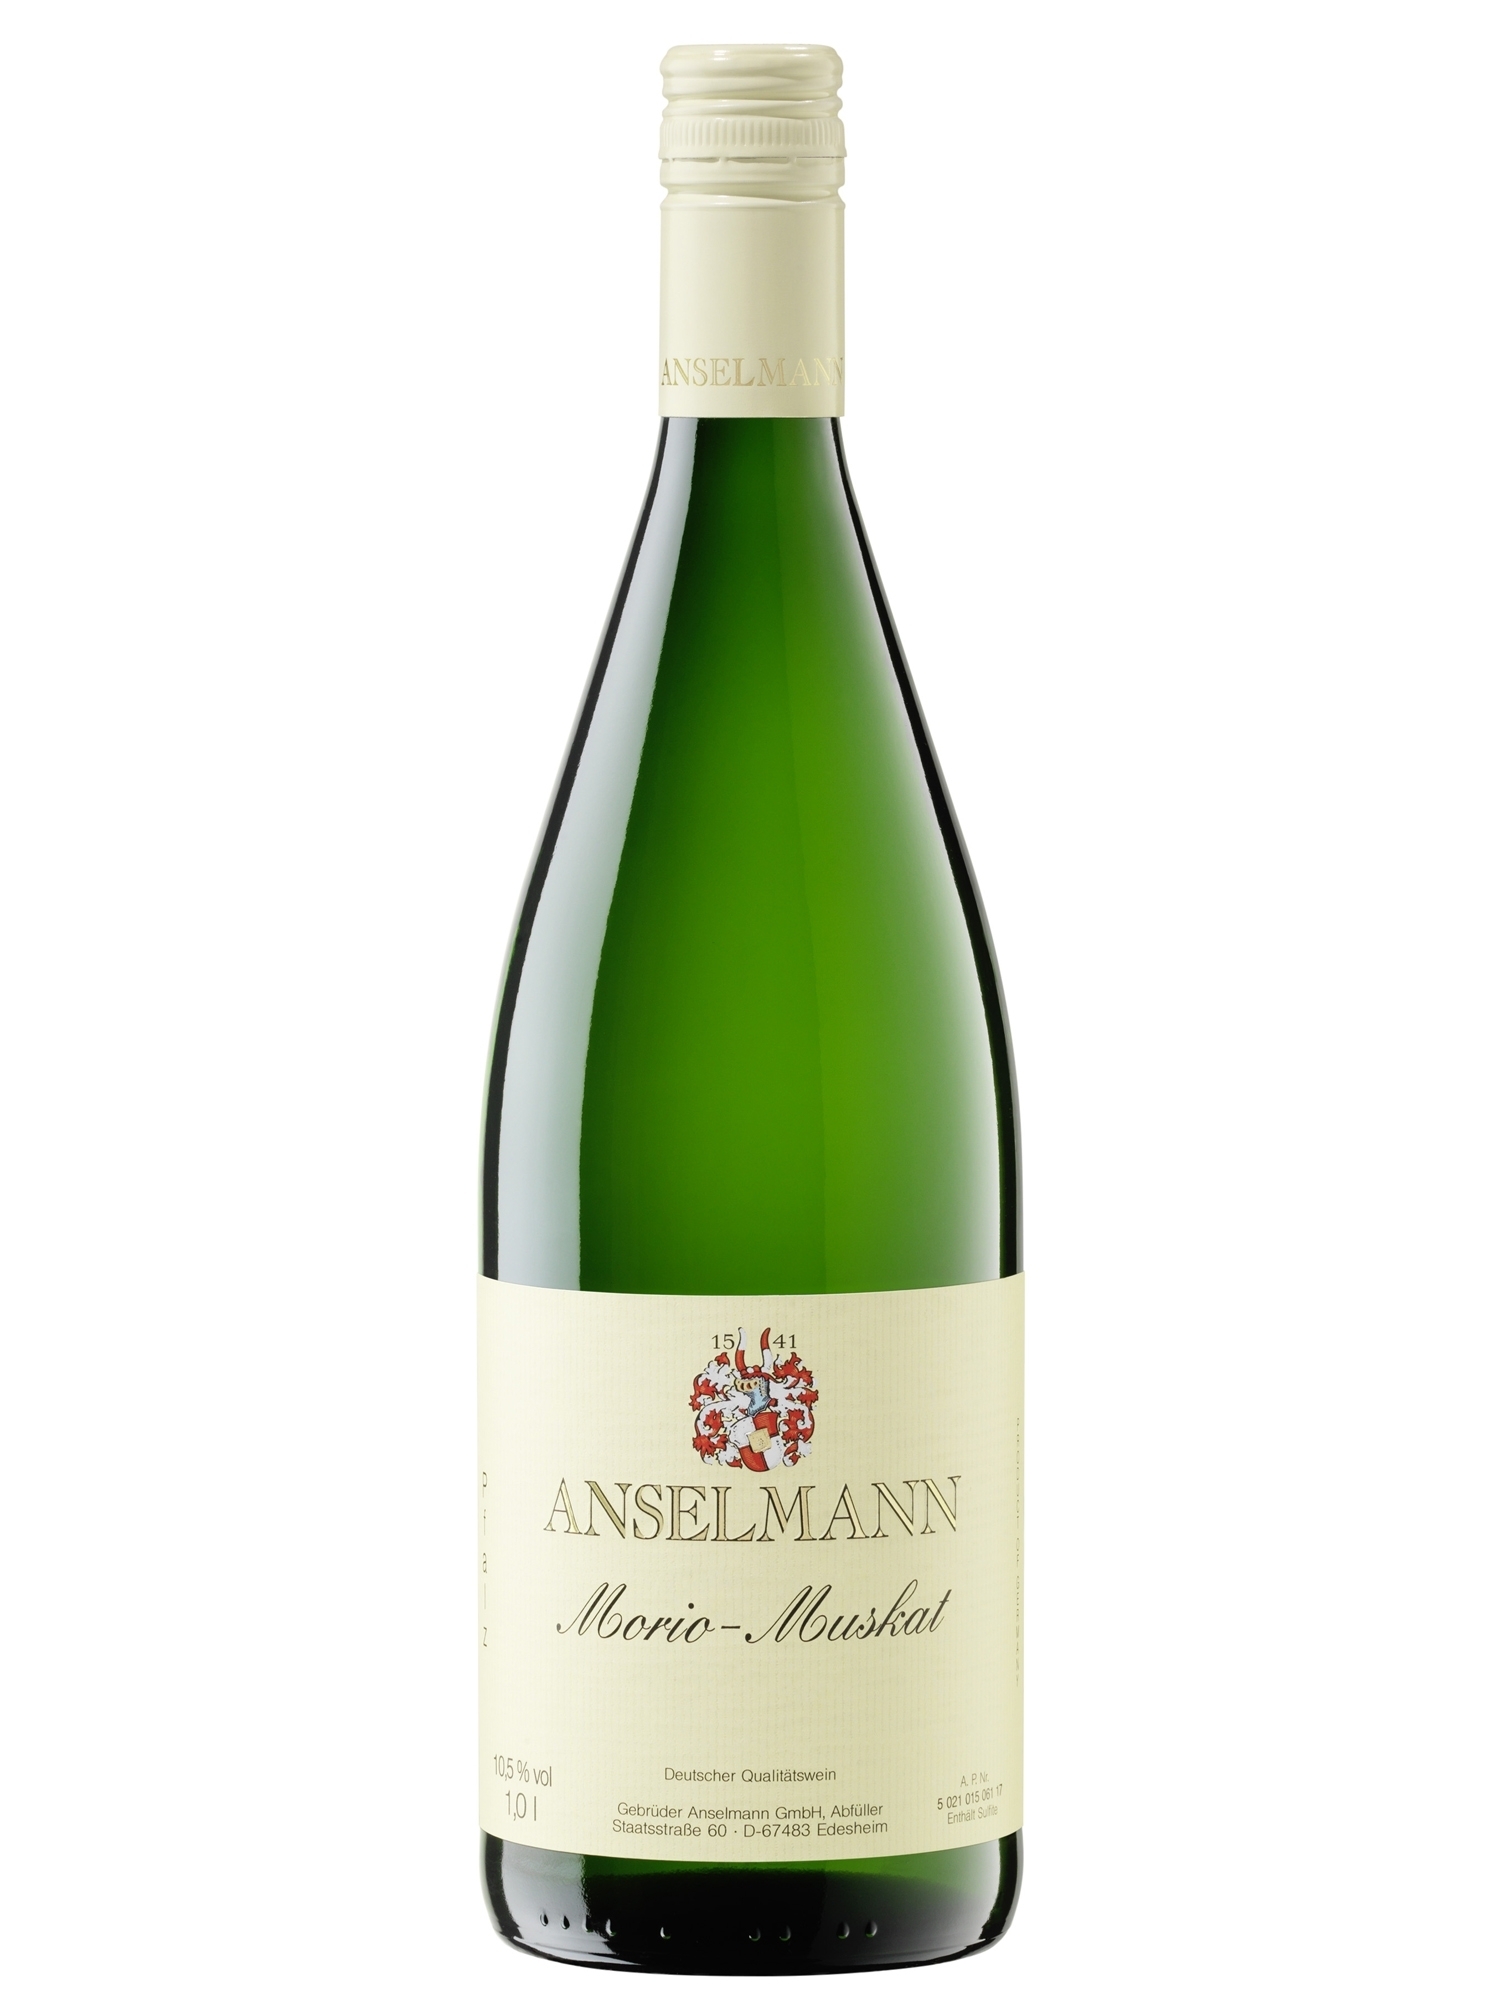 Morio-Muskat lieblich - Anselmann - | Pfalz Wein Online